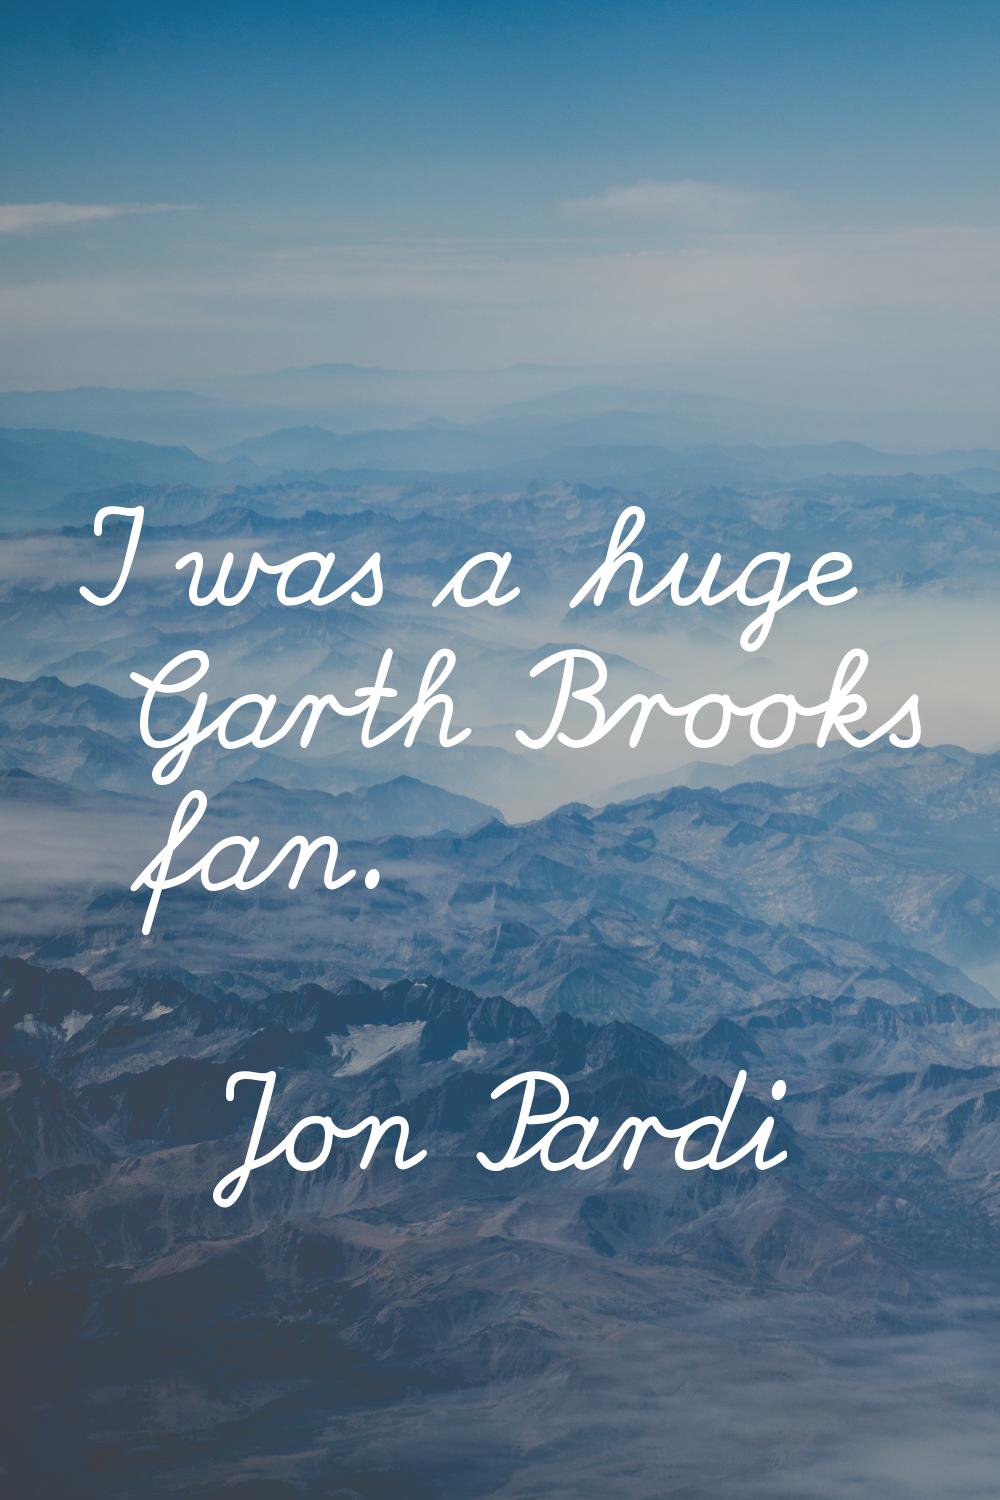 I was a huge Garth Brooks fan.